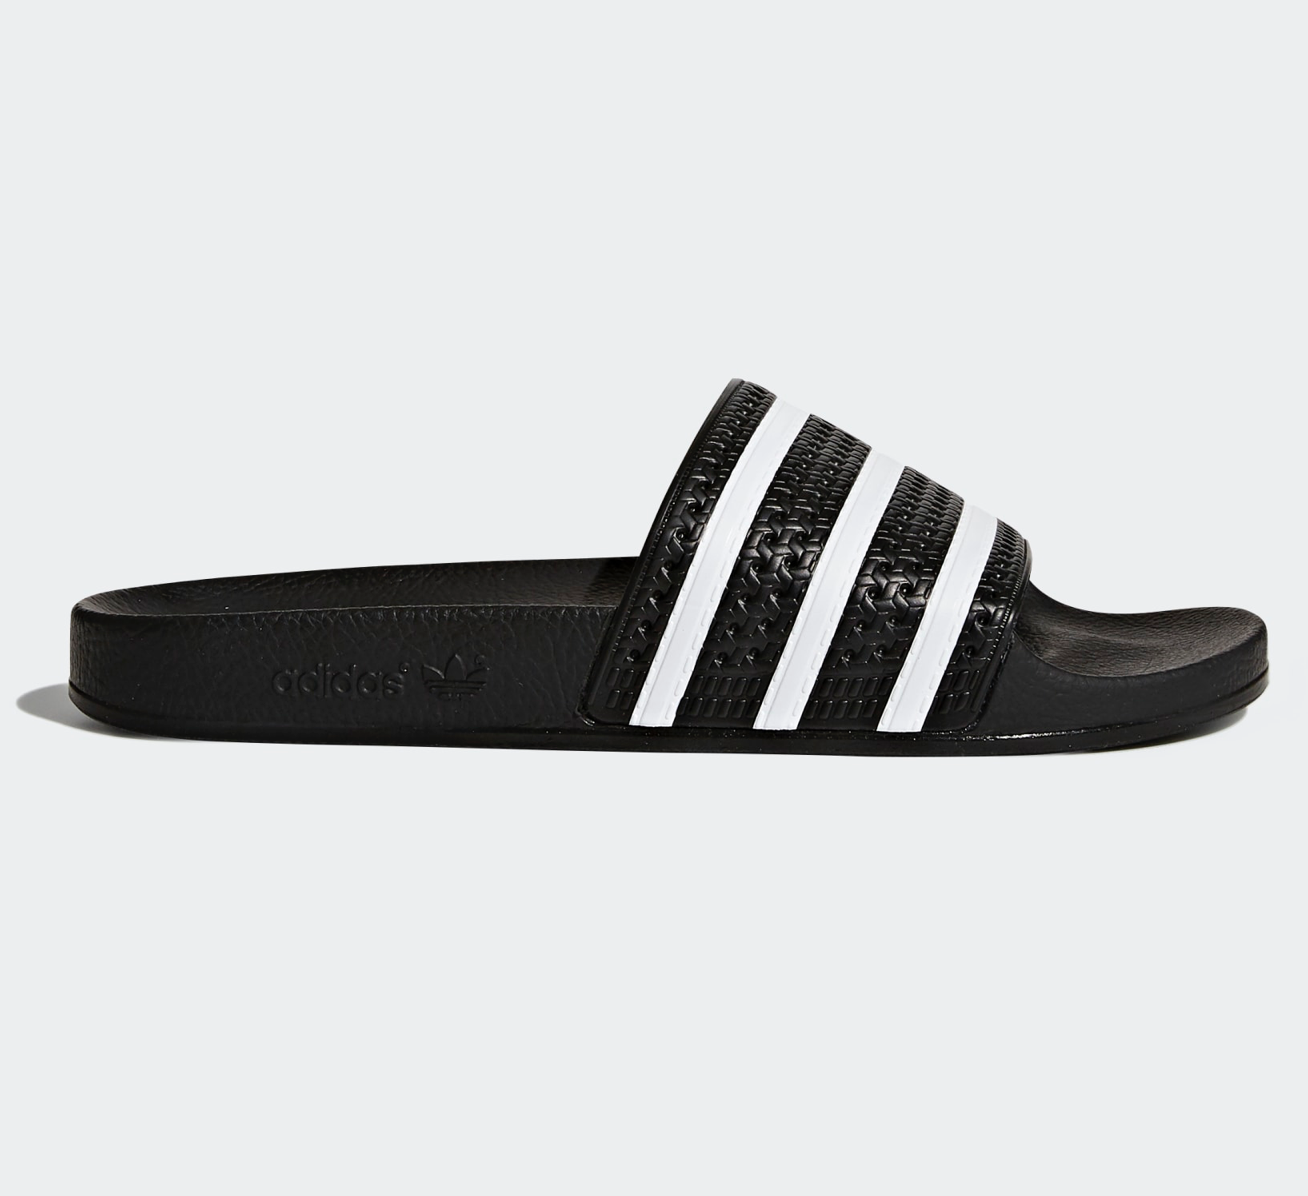 Adidas Adilette Sandals Sliders Slipper Brand New in Black UK Size 6,7,8,9,10,11  | eBay